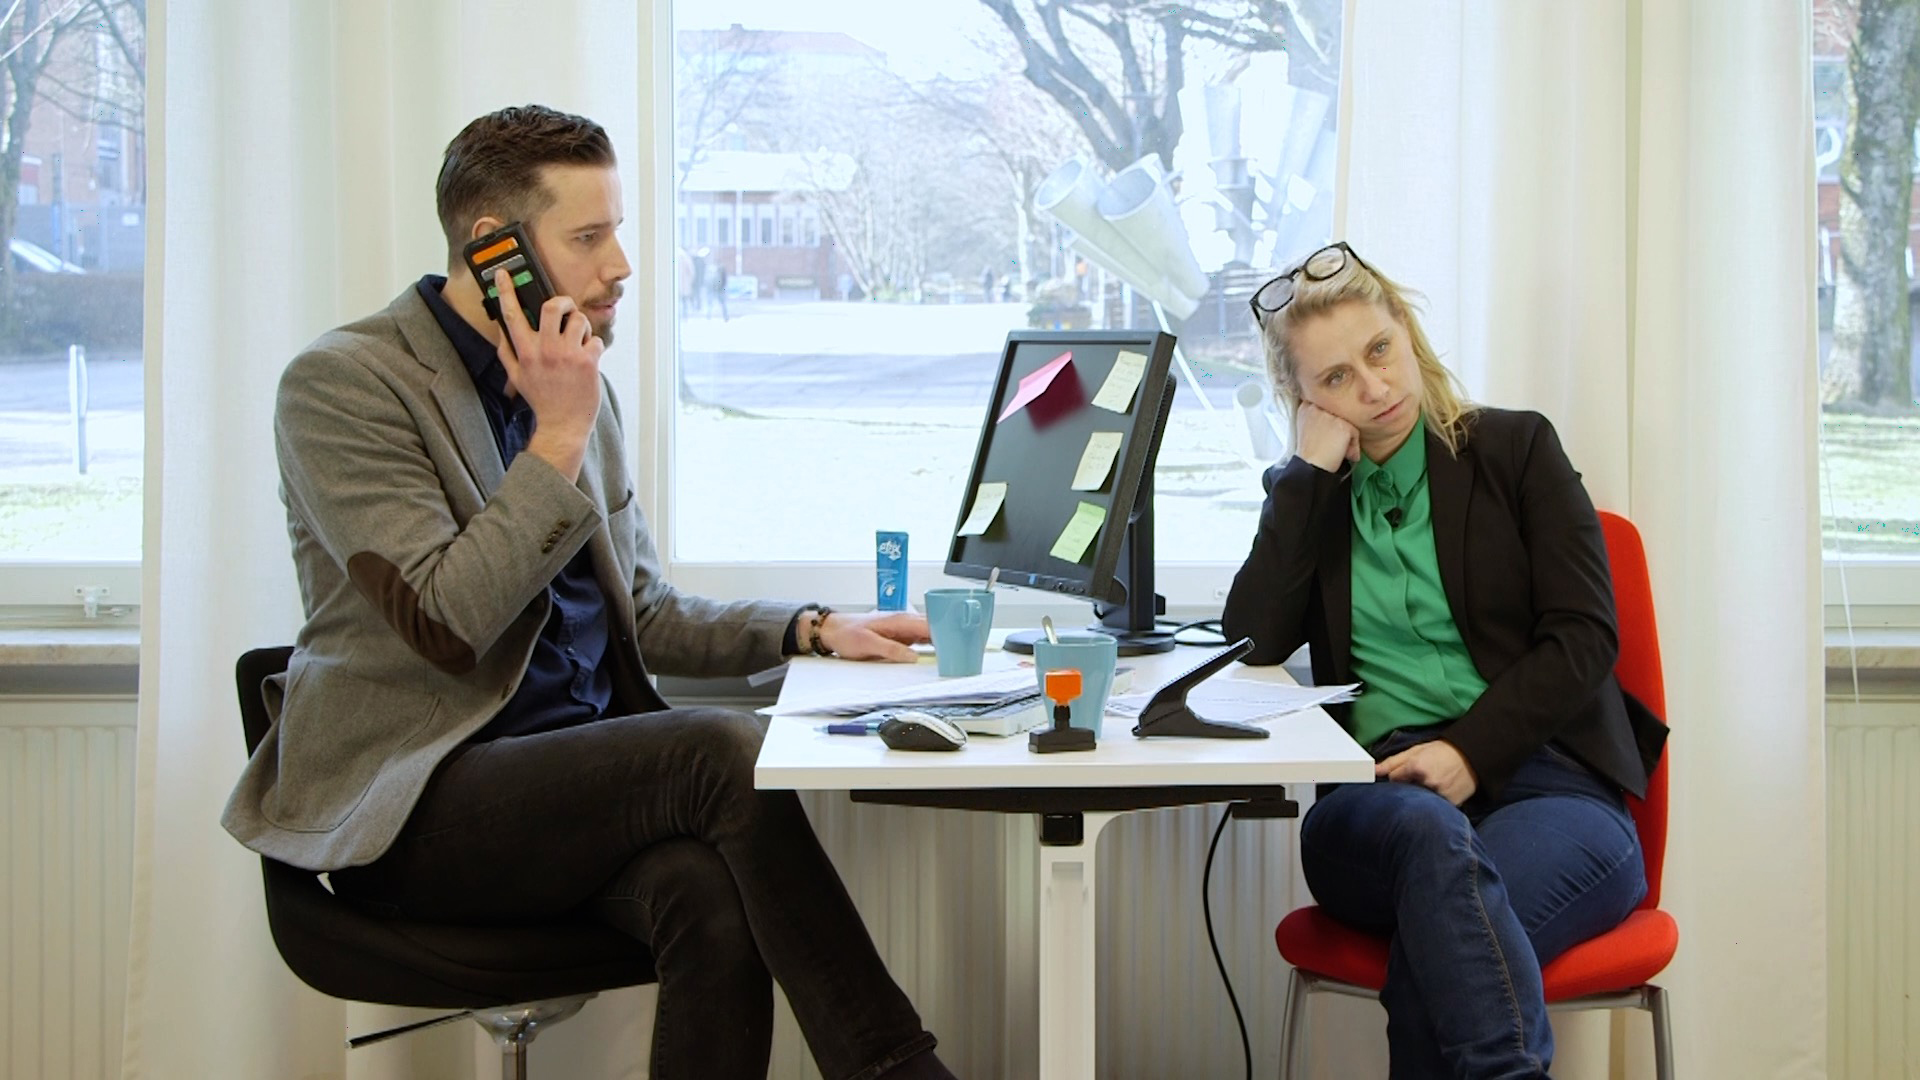 Visar en typisk kontorsmiljö där improverket gestaltar hur det kan se ut i en situation när "svåra samtal" uppkommer, på arbetsplatsen. Bilden är tagen ur en filmsketch som Improverket gjort tillsammans med Chalmers.